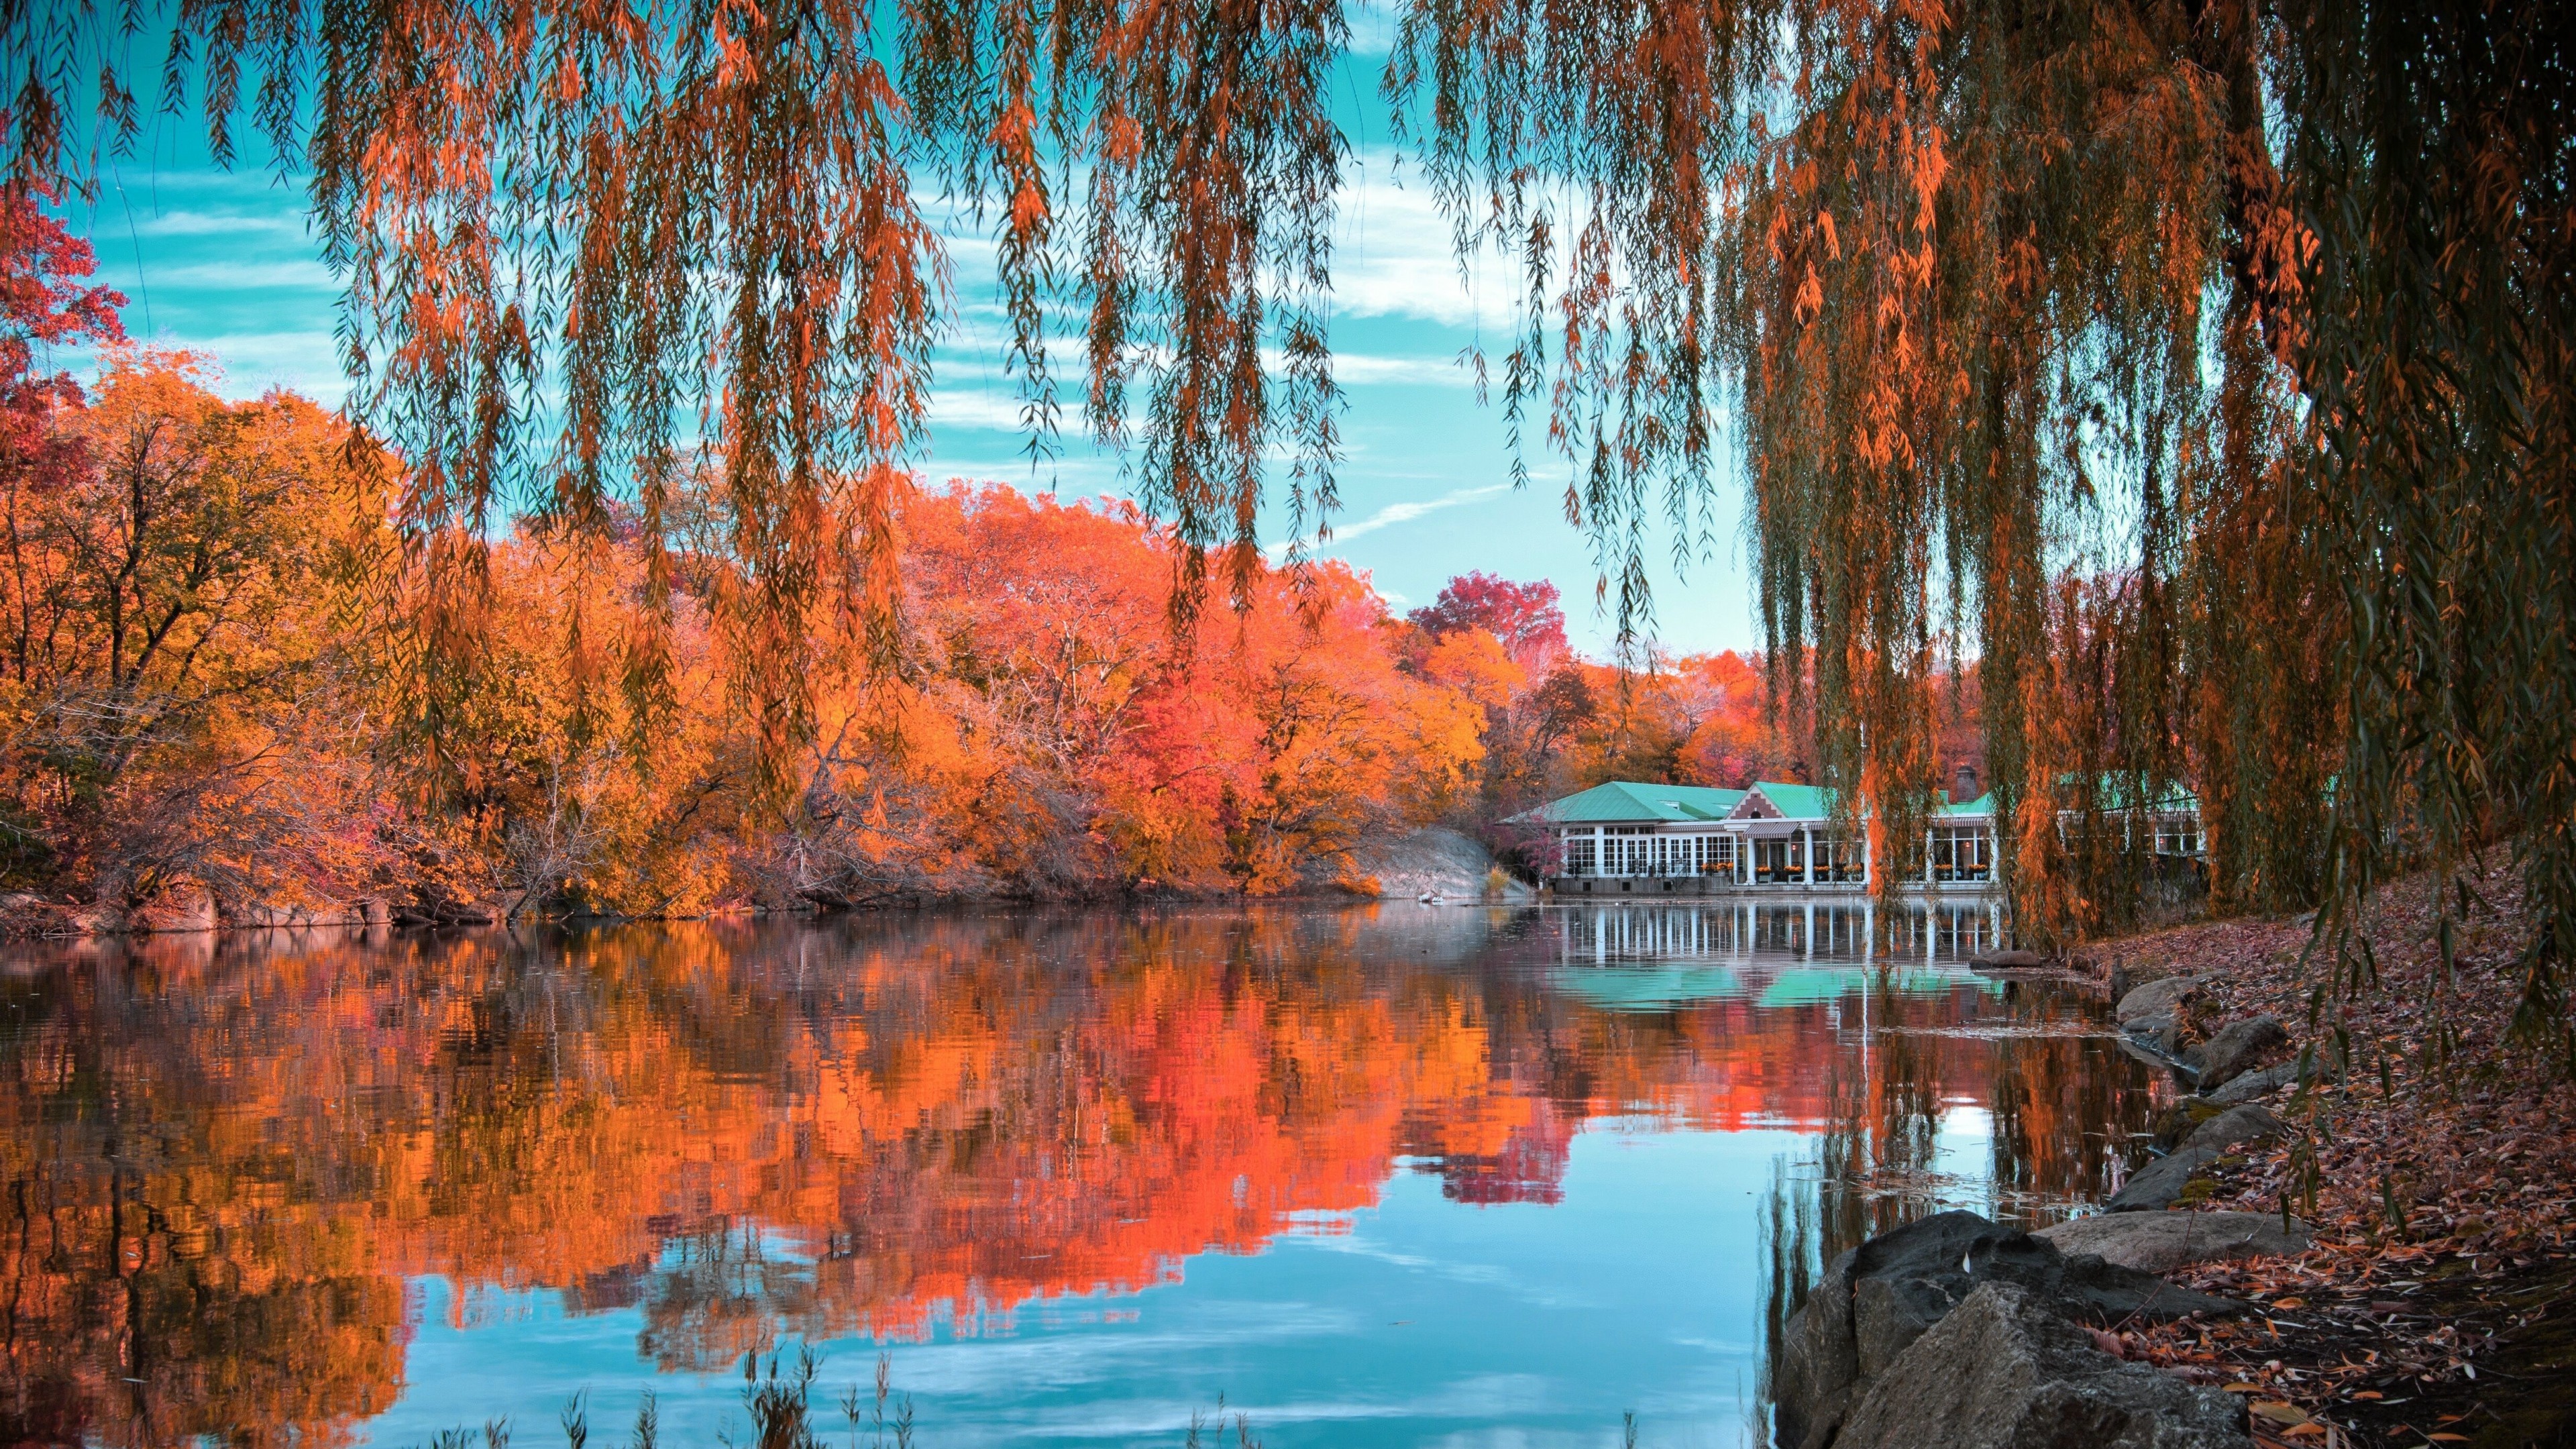 3840x2160 Menschengemacht - Central Park Spiegelung Herbst Foliage Baum Pond Wallpaper